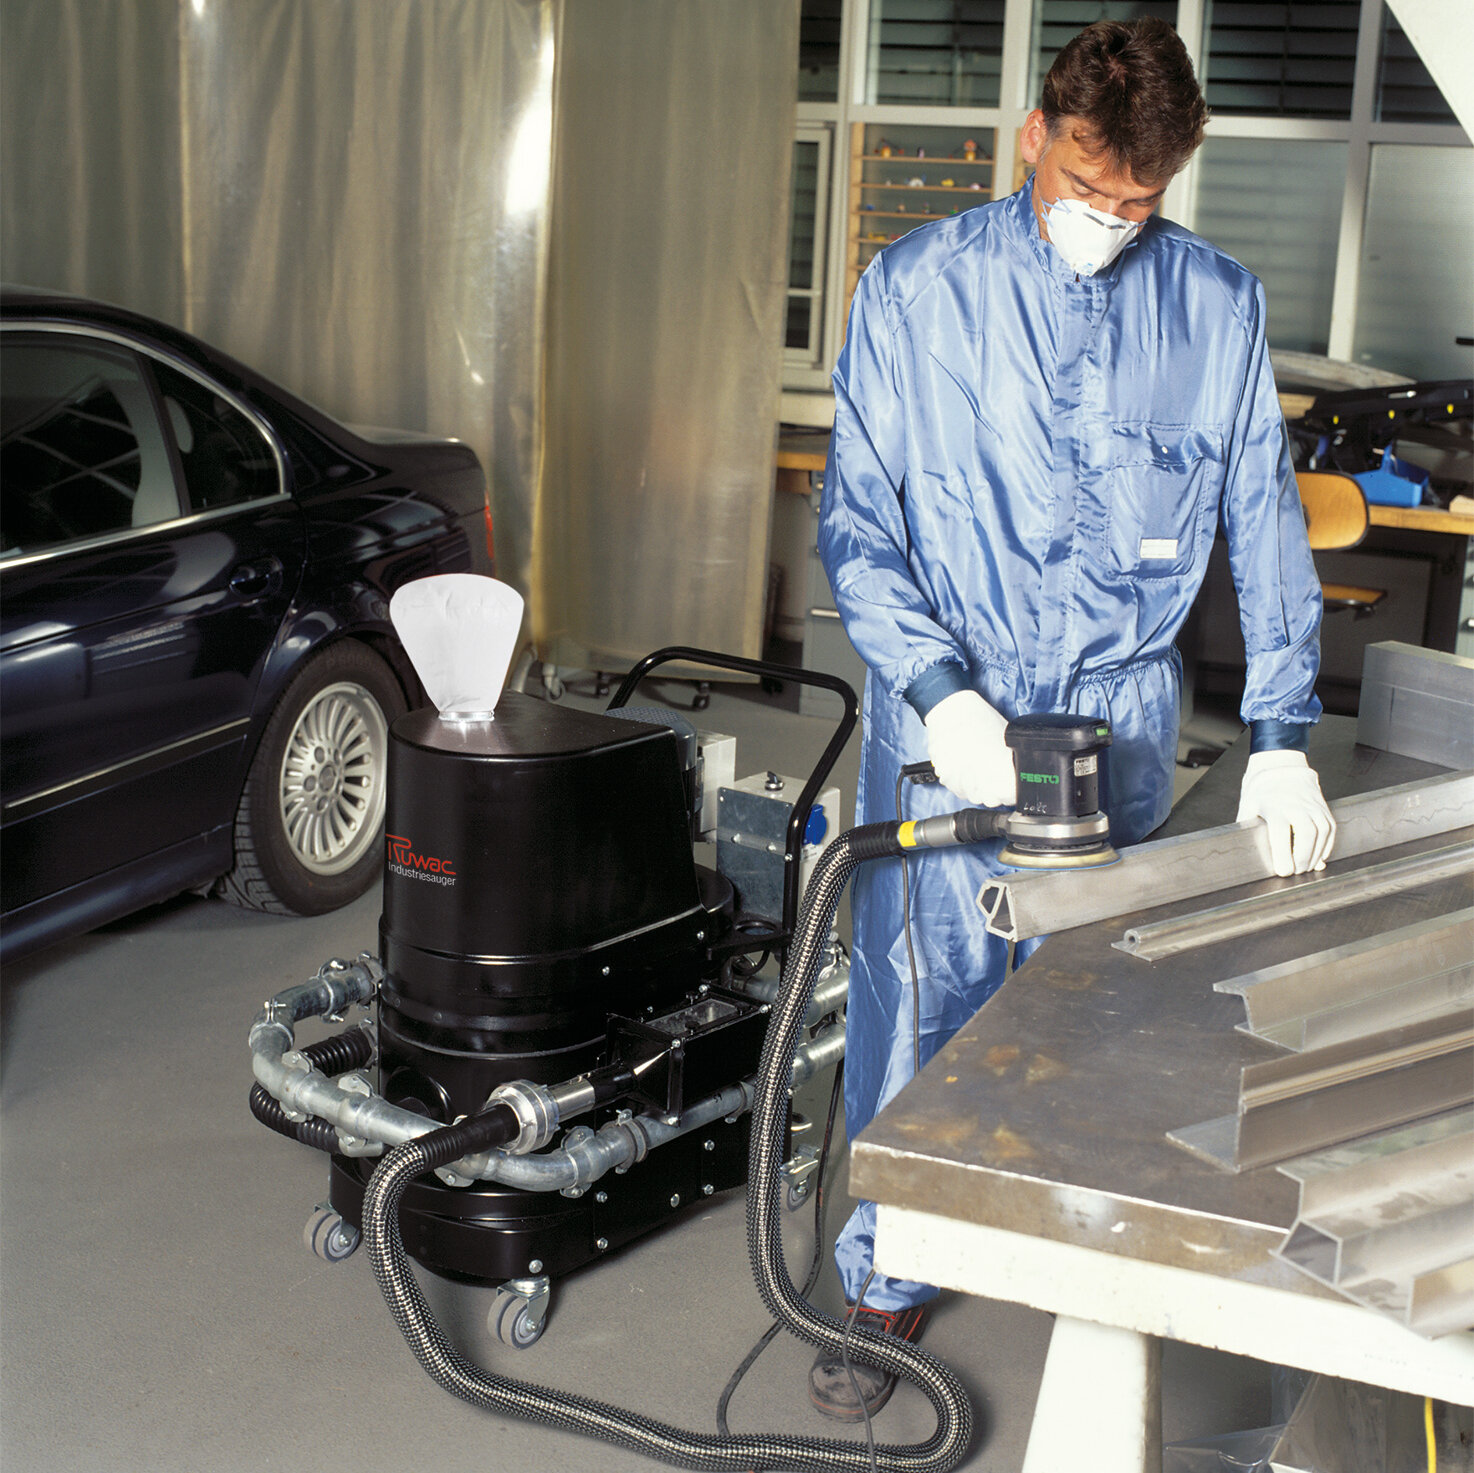 Průmyslový vysavač Ruwac R01 R022 s lapačem jisker v oblasti s nebezpečím výbuchu prachu vysává hořlavý hliníkový prach u společnosti BMW v Mnichově.